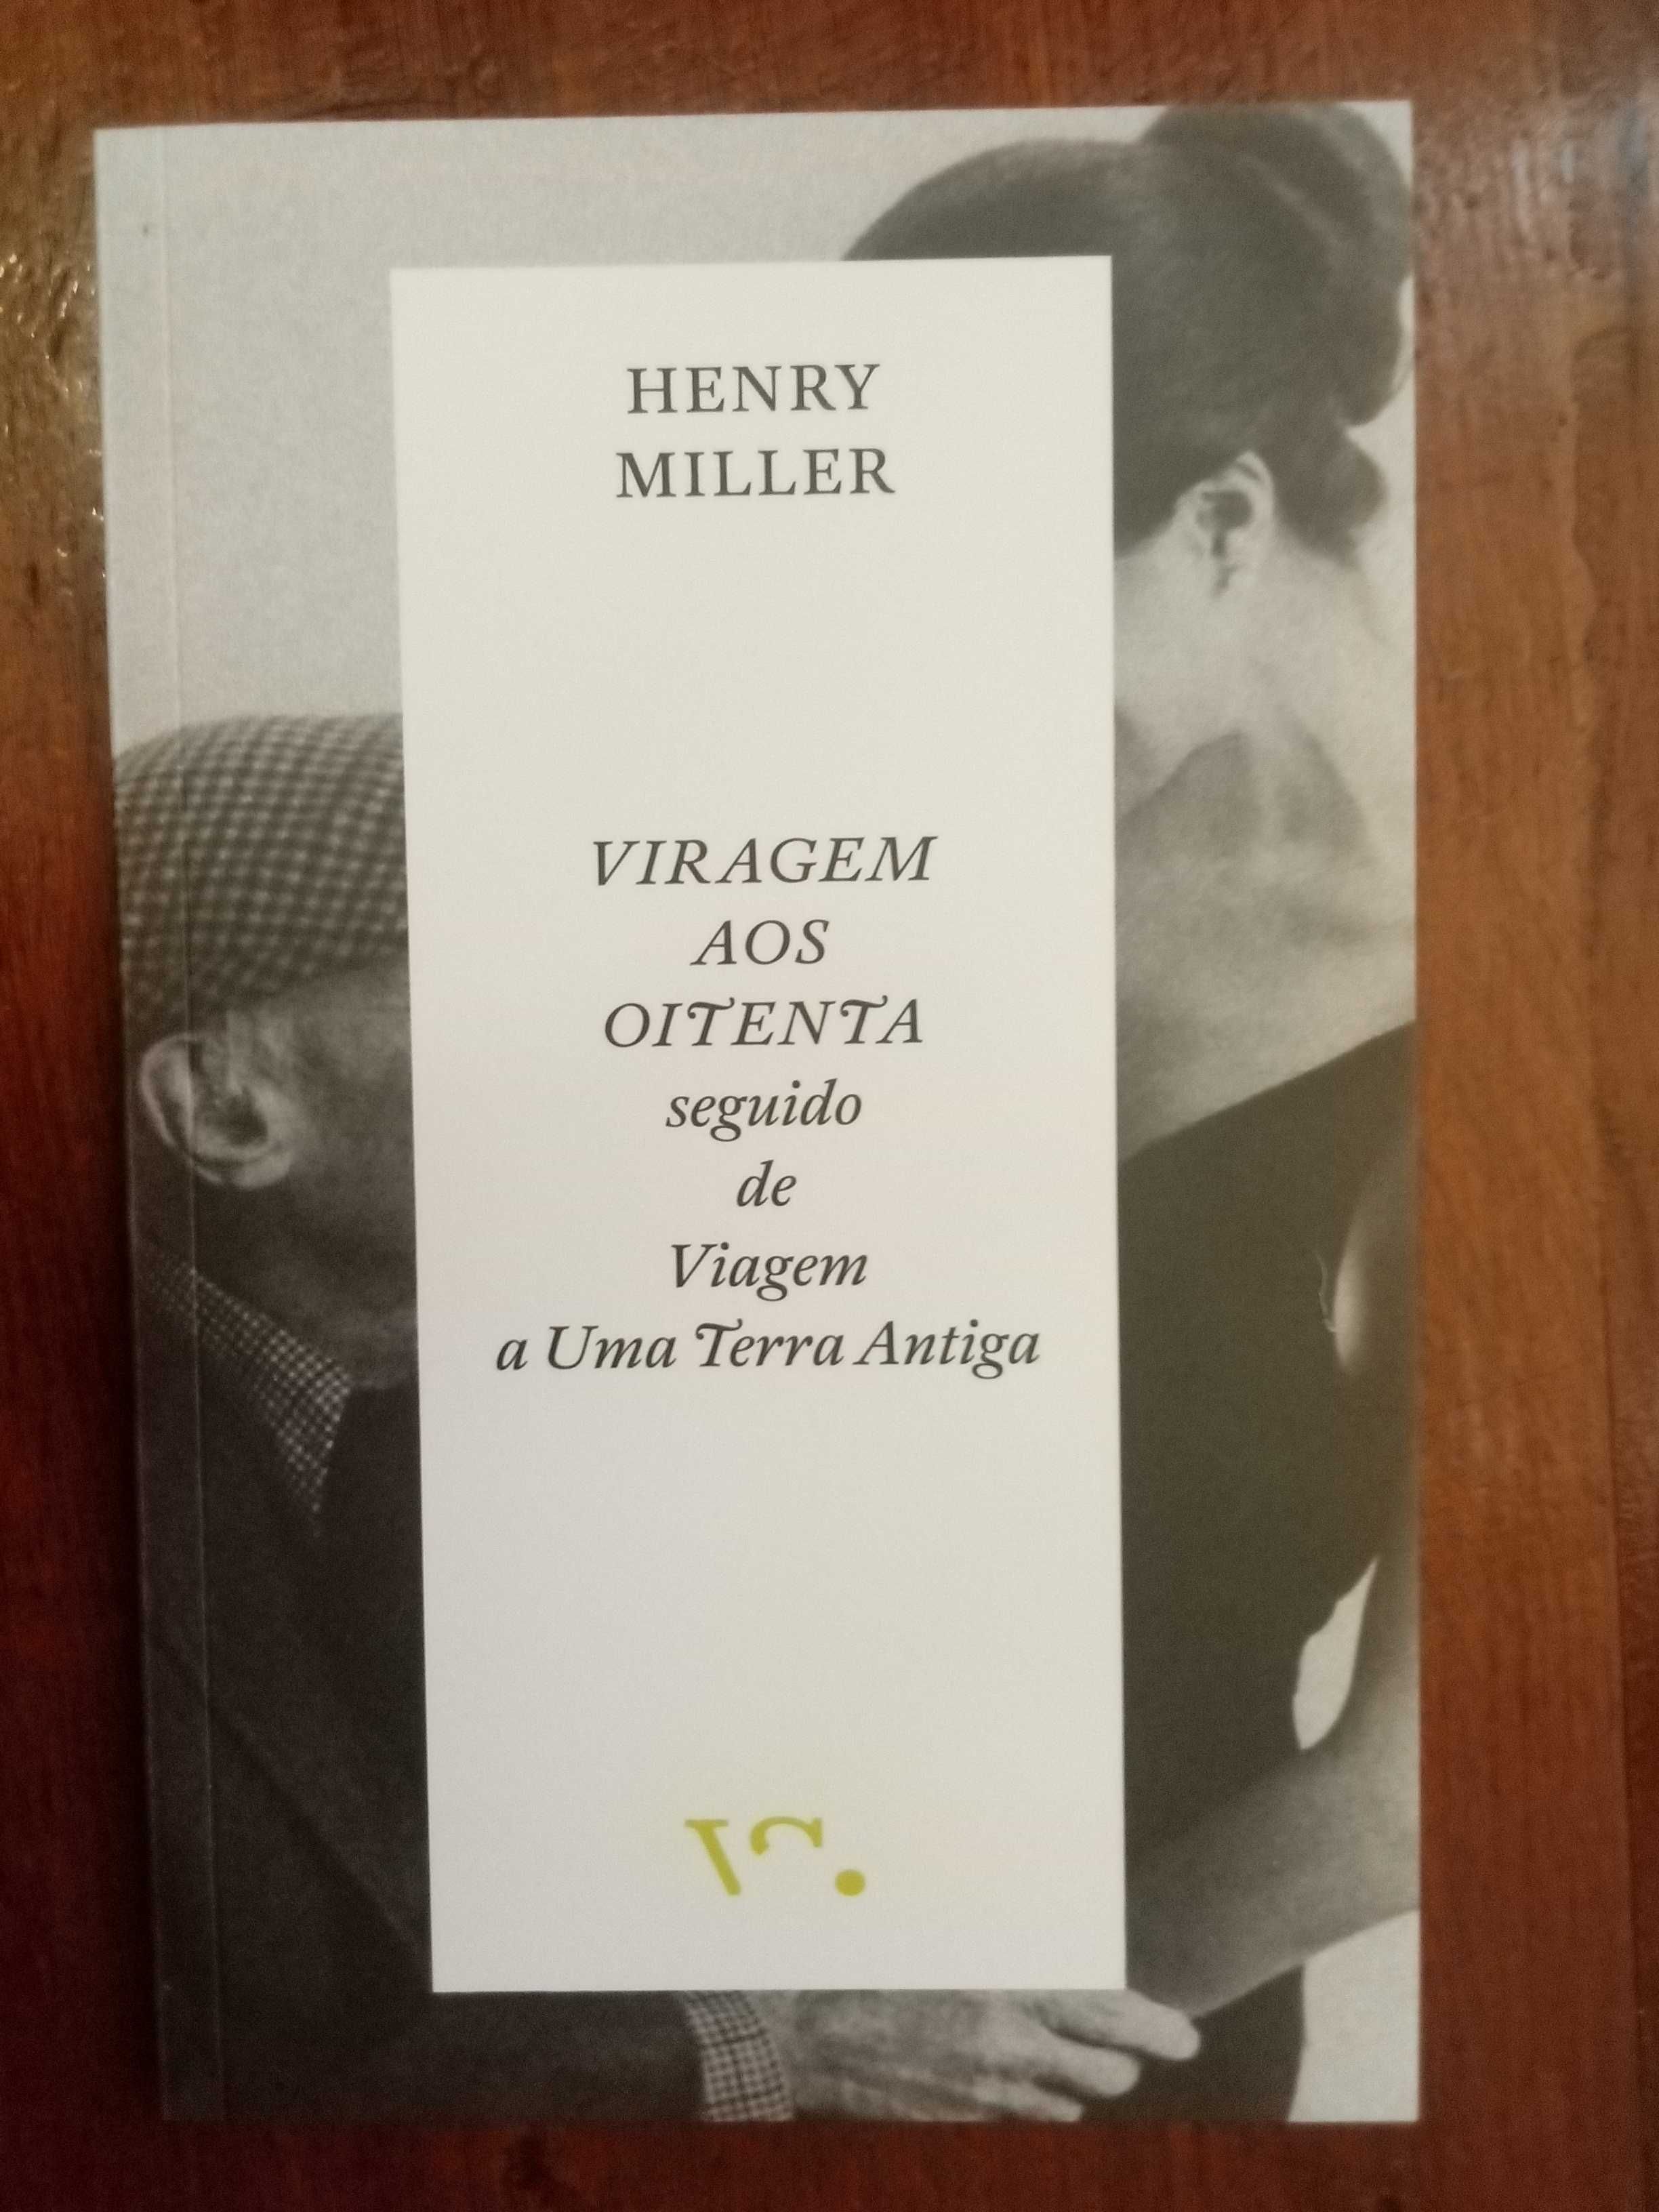 Henry Miller - Viragem aos oitenta